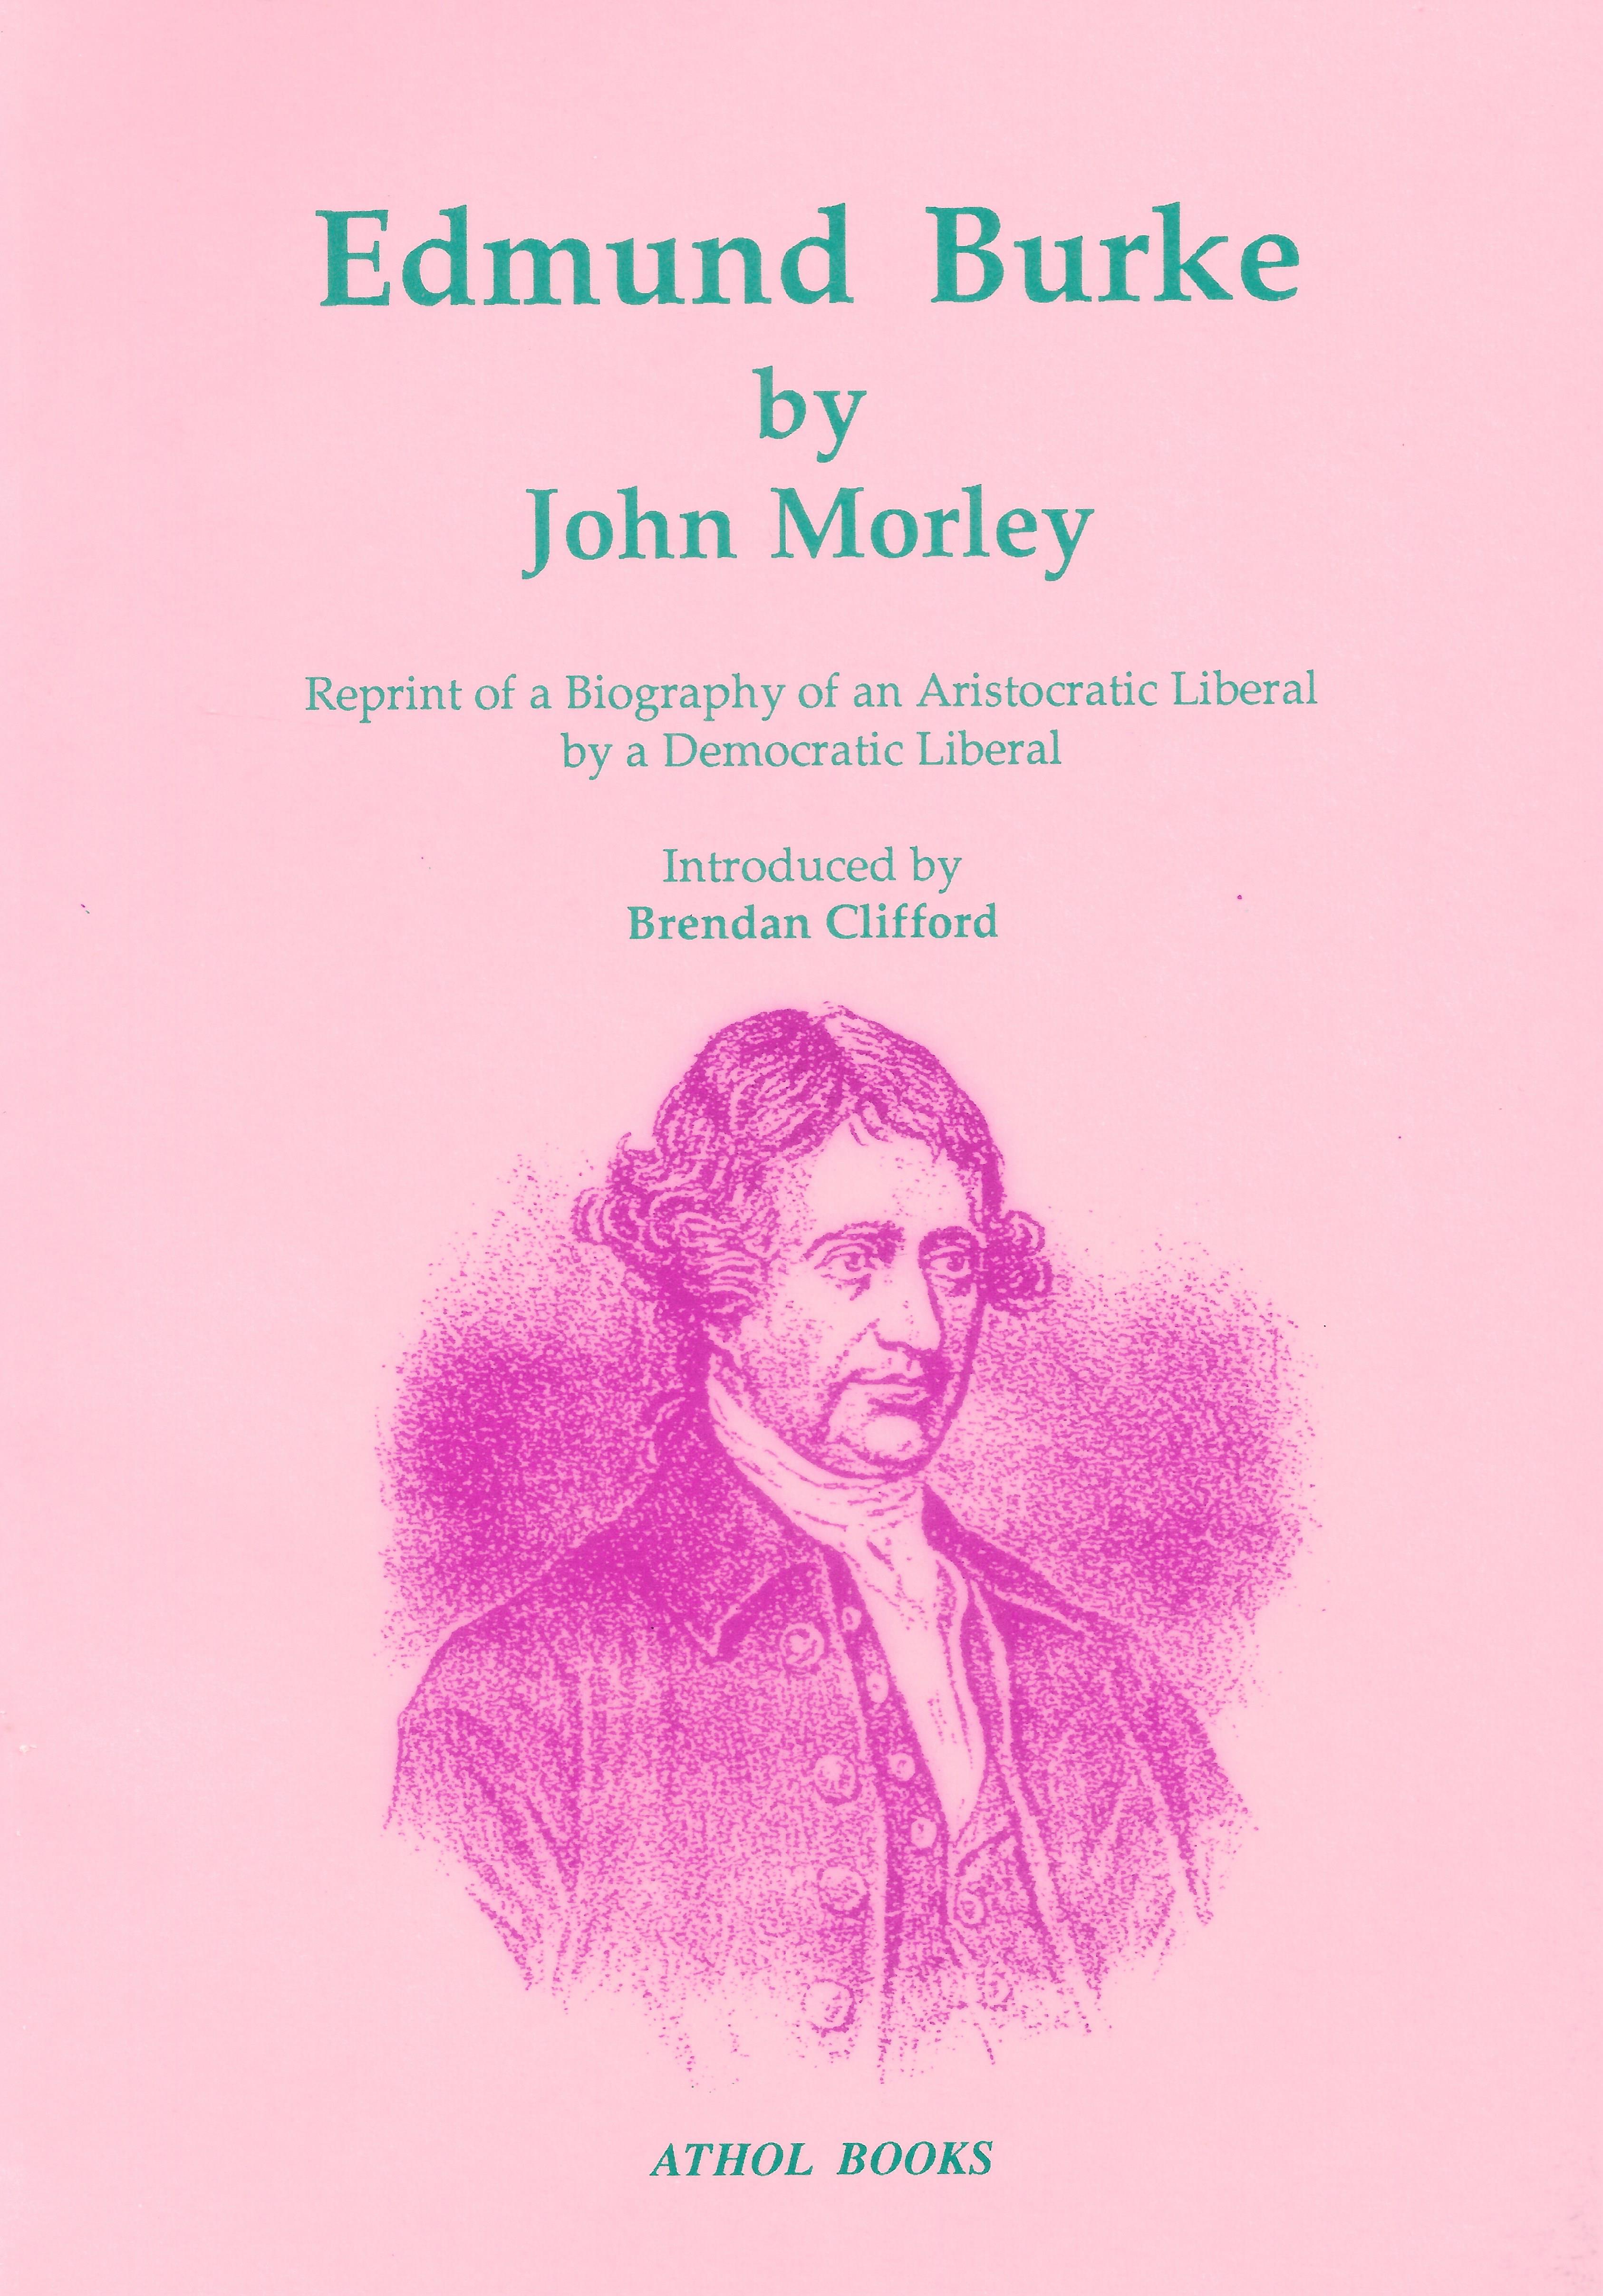 Edmund Burke (John Morley 1879)